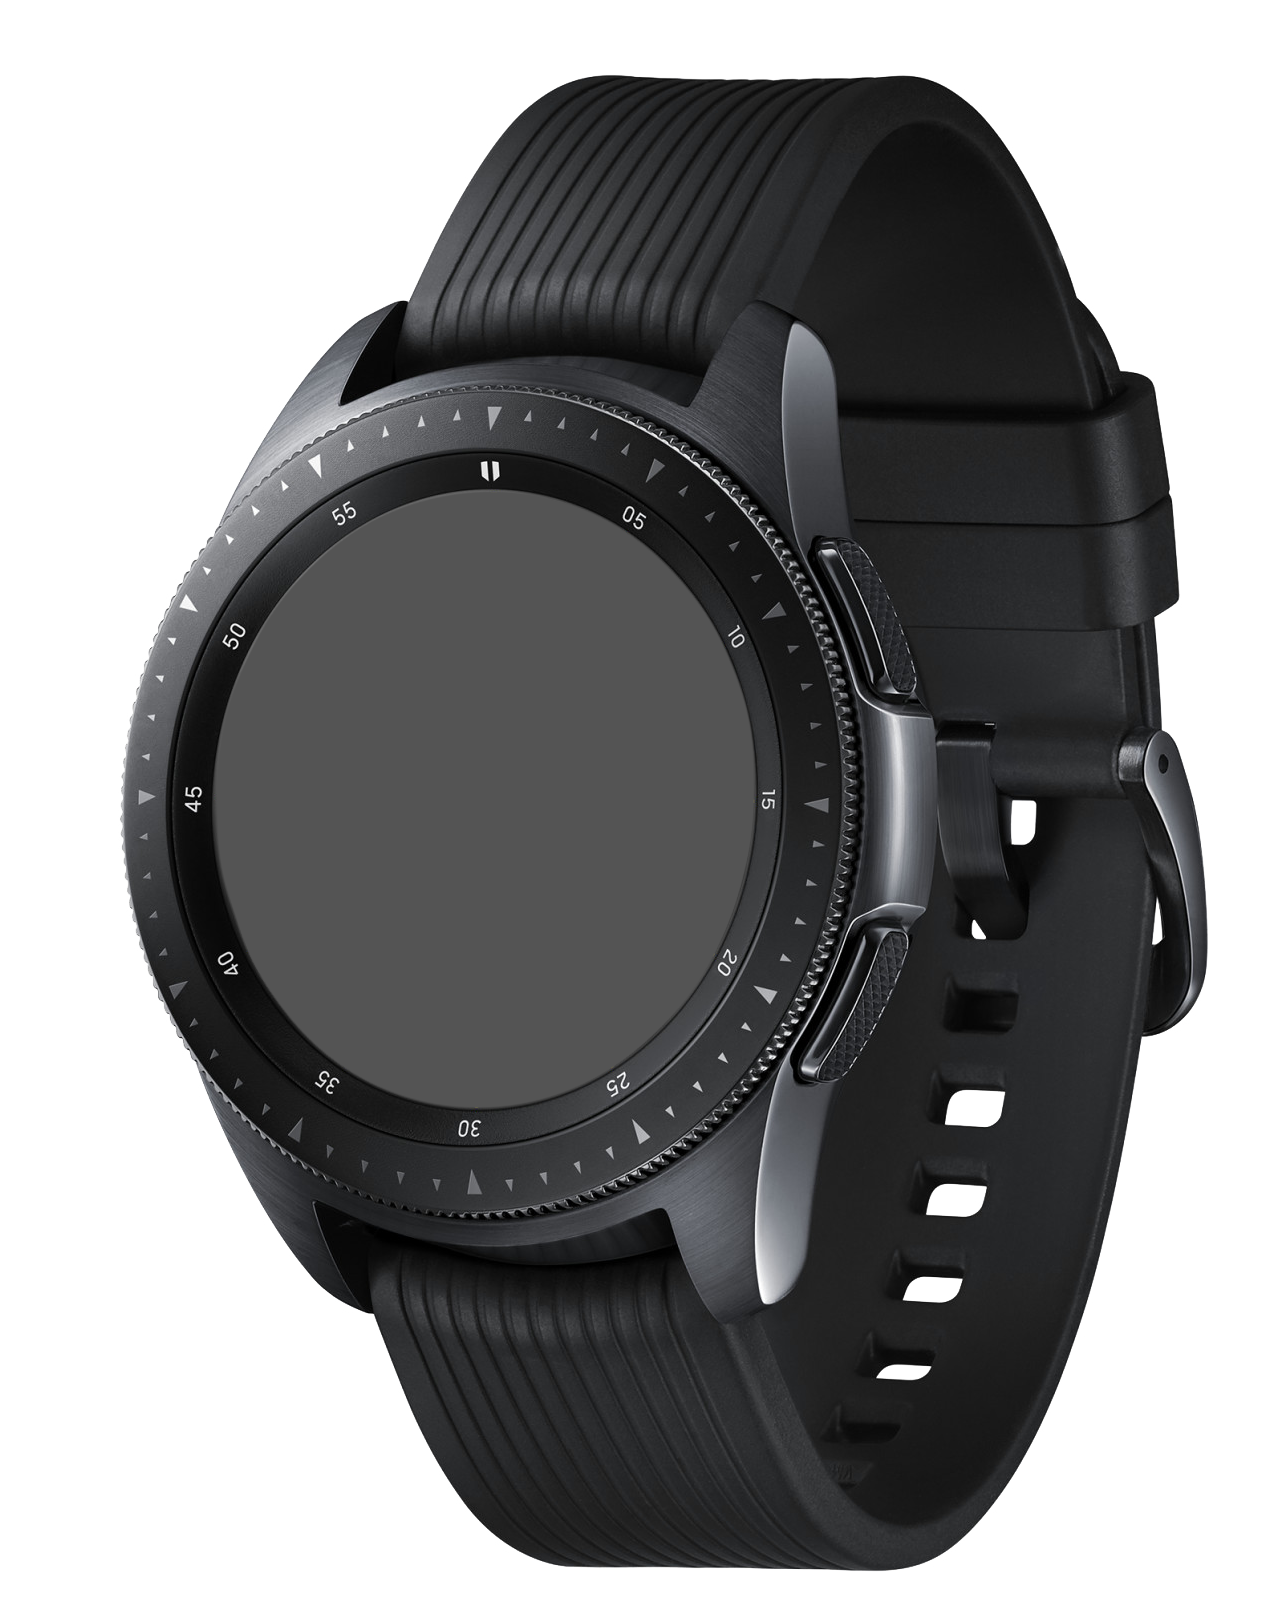 Samsung Galaxy Watch 42mm SM-R815 LTE schwarz - Ohne Vertrag